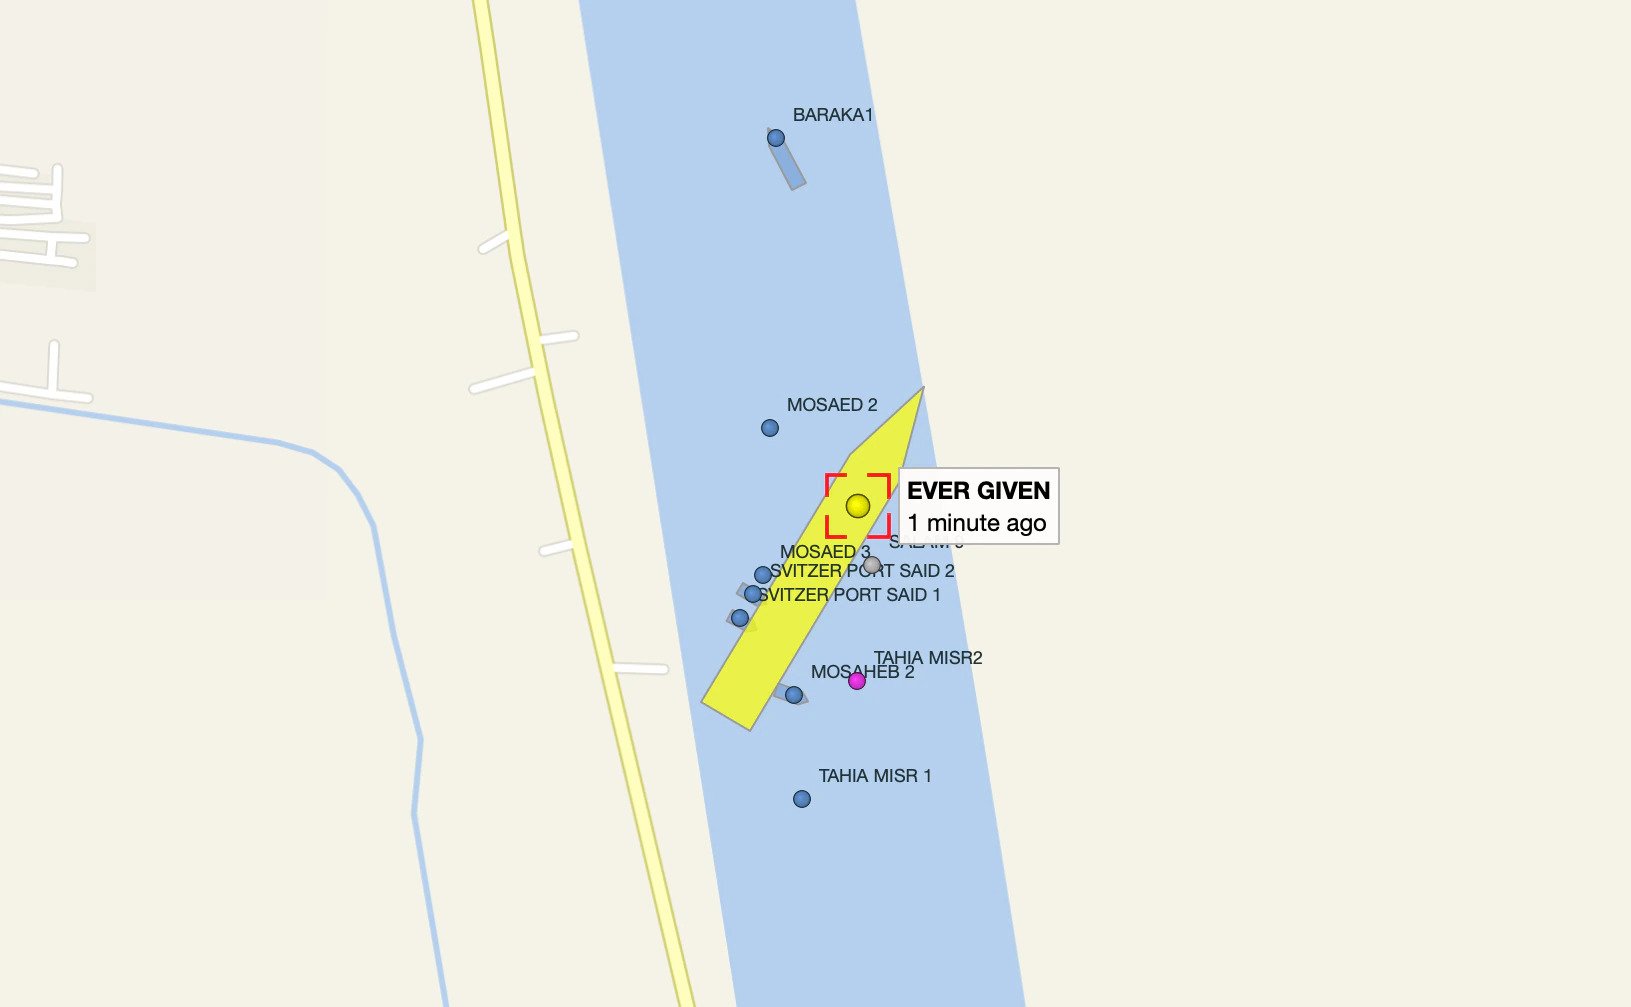 Op VesselFinder is te zien dat veel schepen vast zijn komen te liggen in het kanaal. (Beeld VesselFinder)